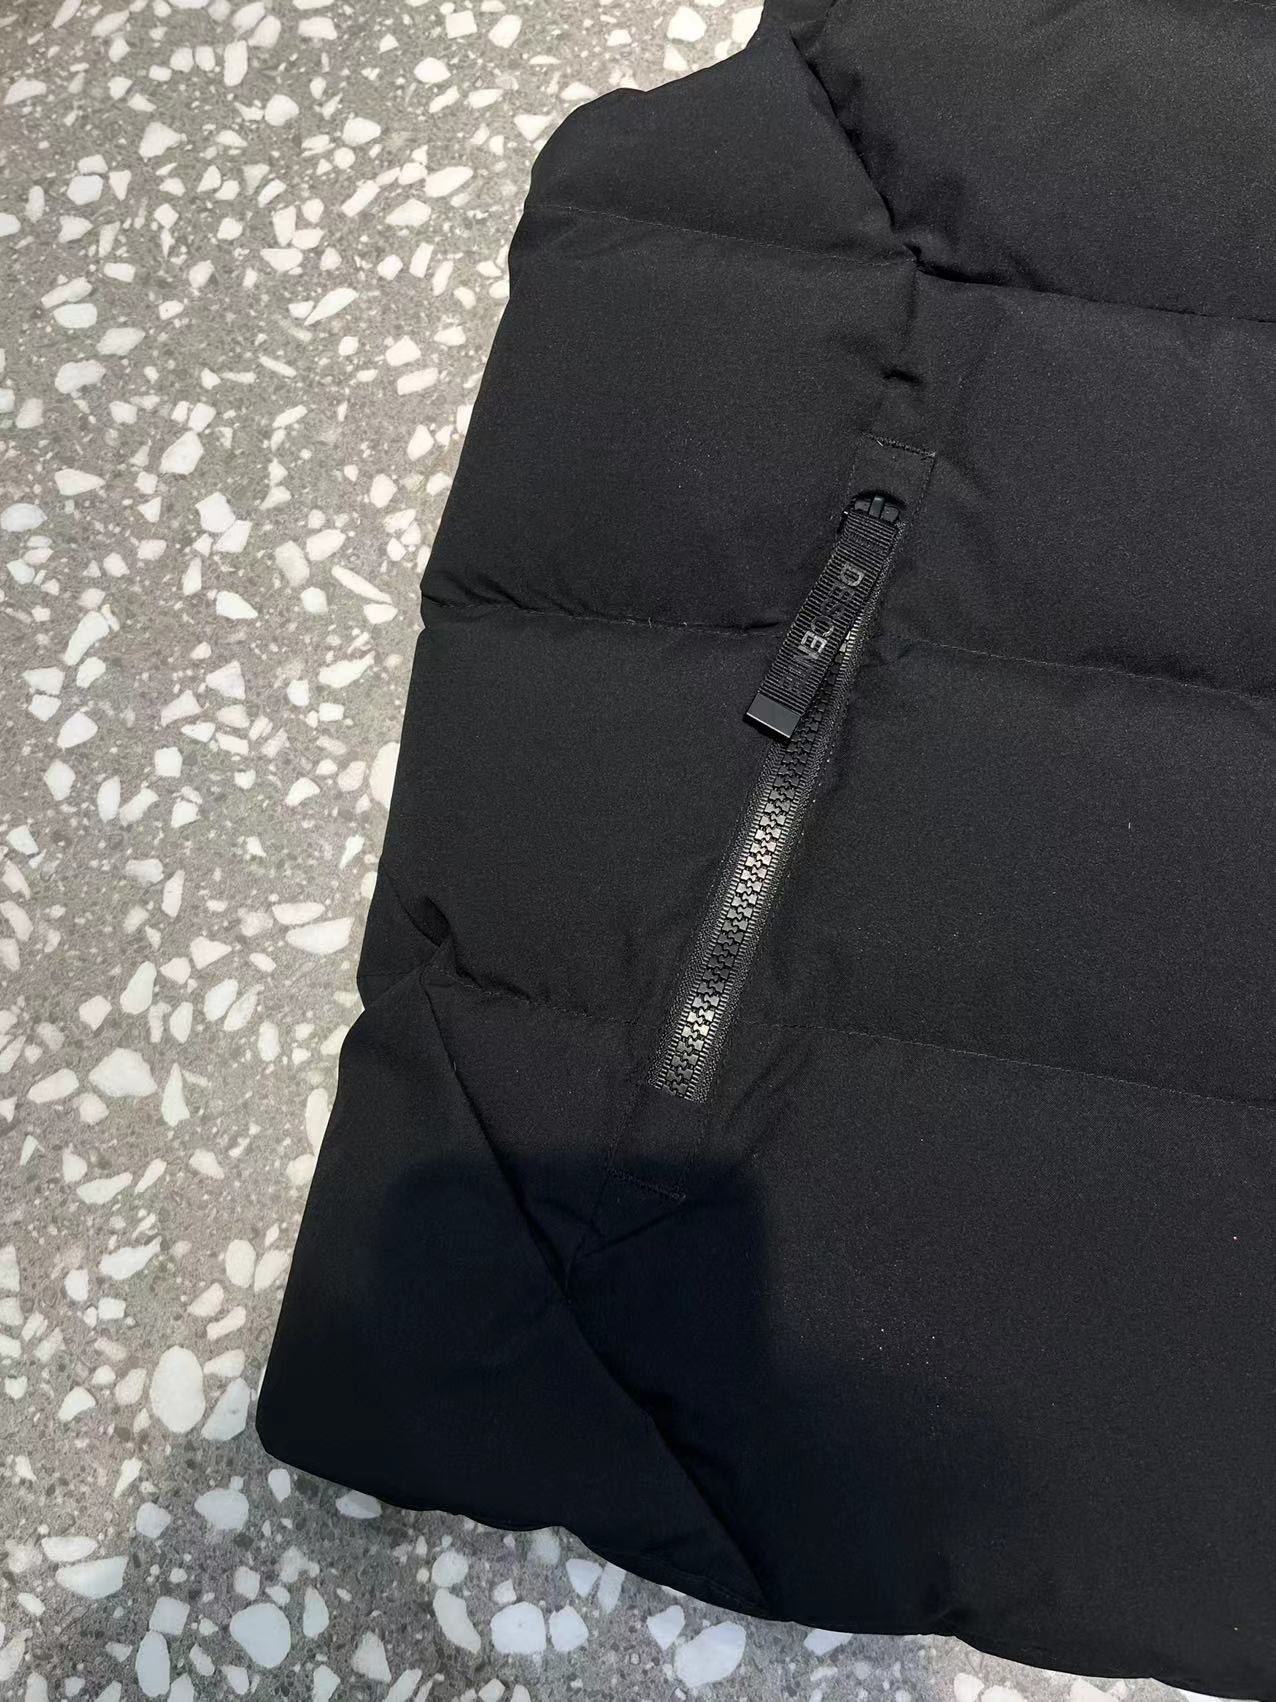 デサントスーツスーパーコピー 無袖 ダウンジャケット 動きやすい 厚い 2色可選 ブラック_6